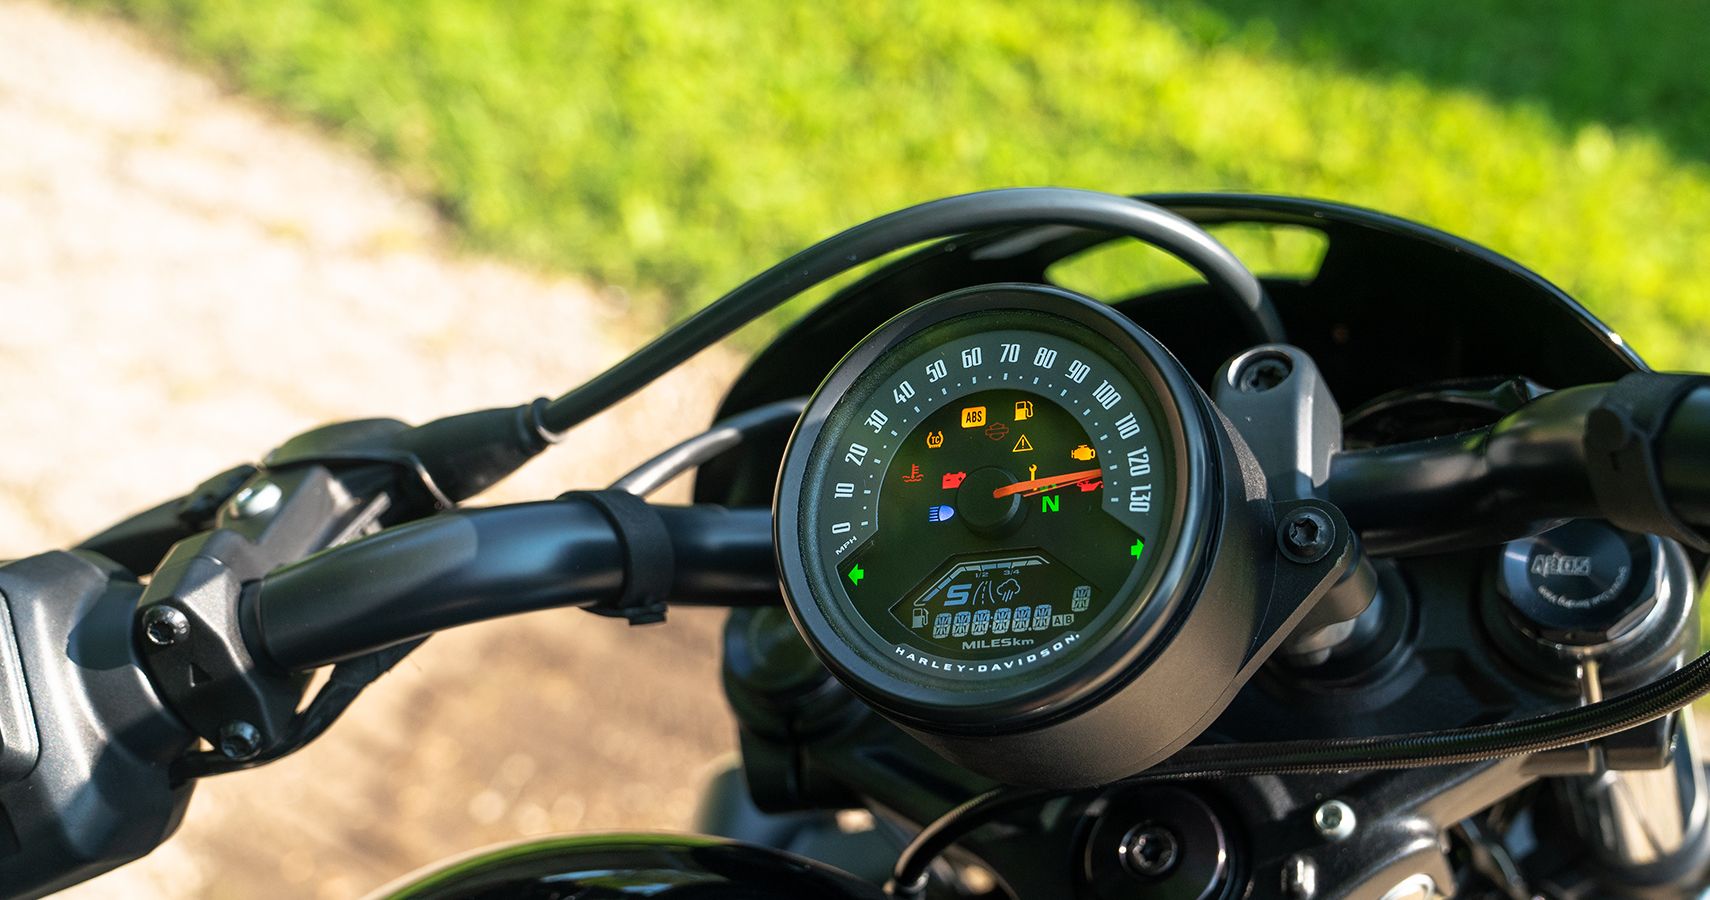 2022 Harley-Davidson Nightster gauge cluster